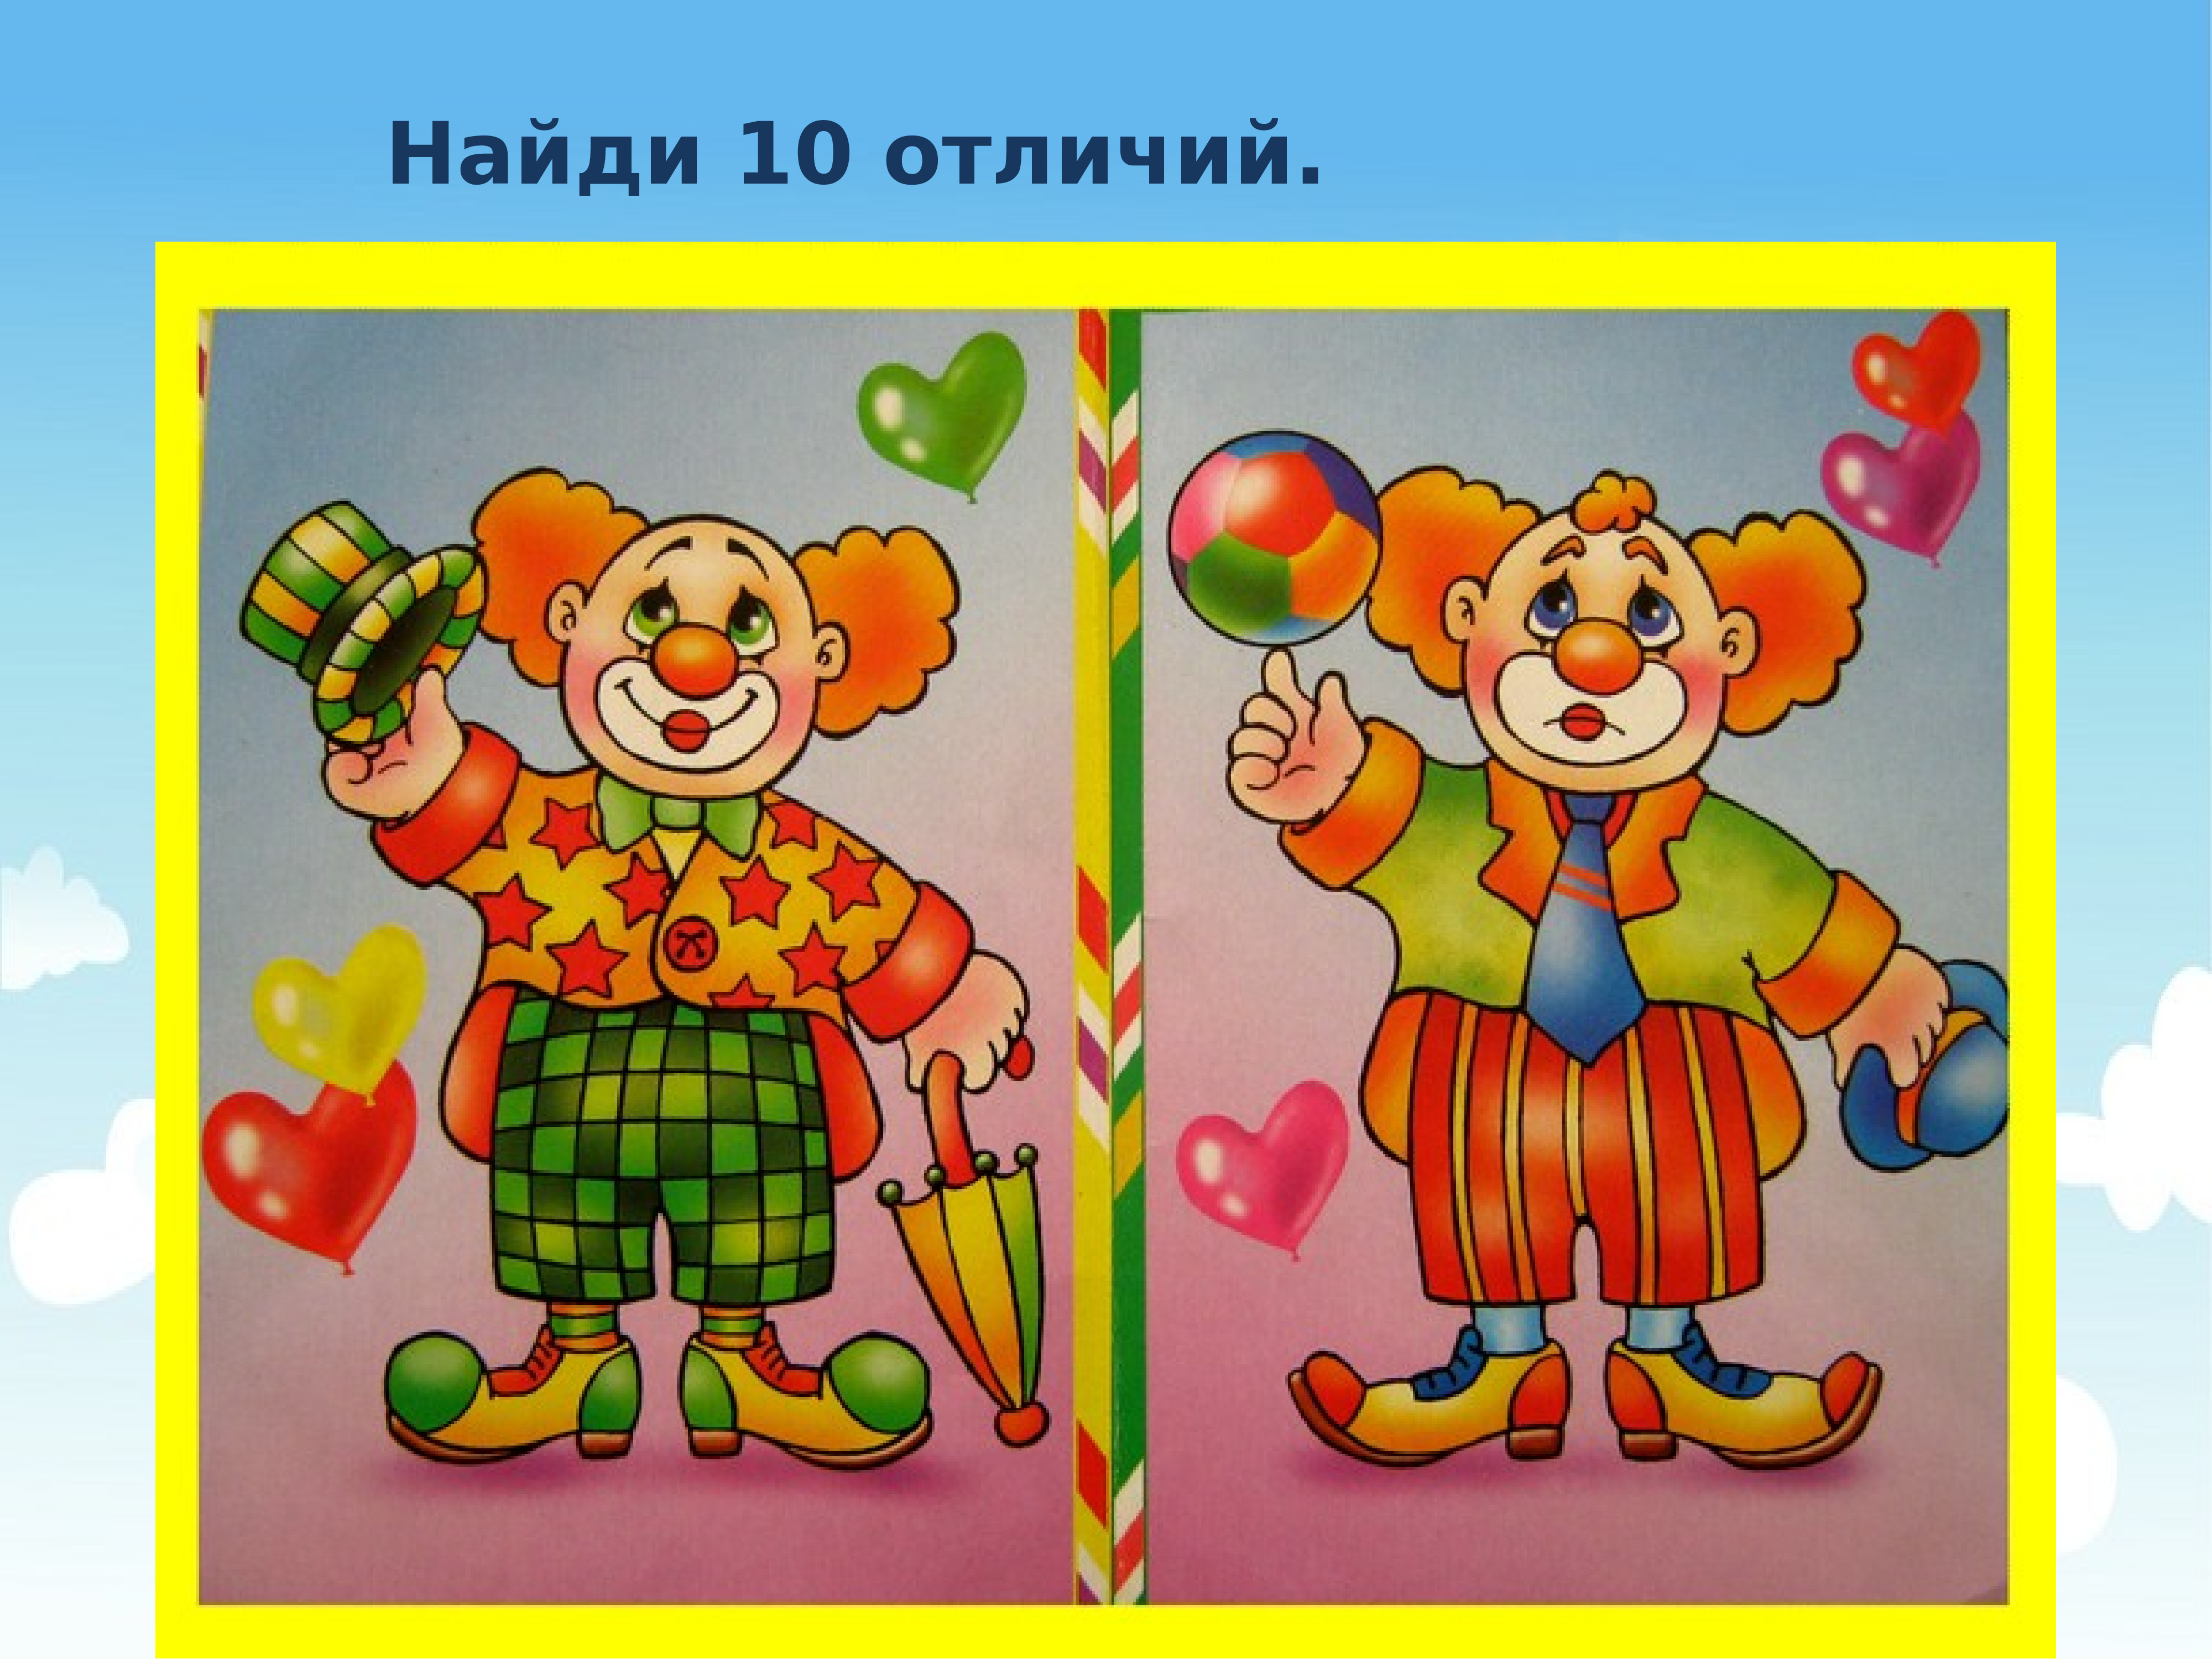 Картина с клоунами Найди отличия